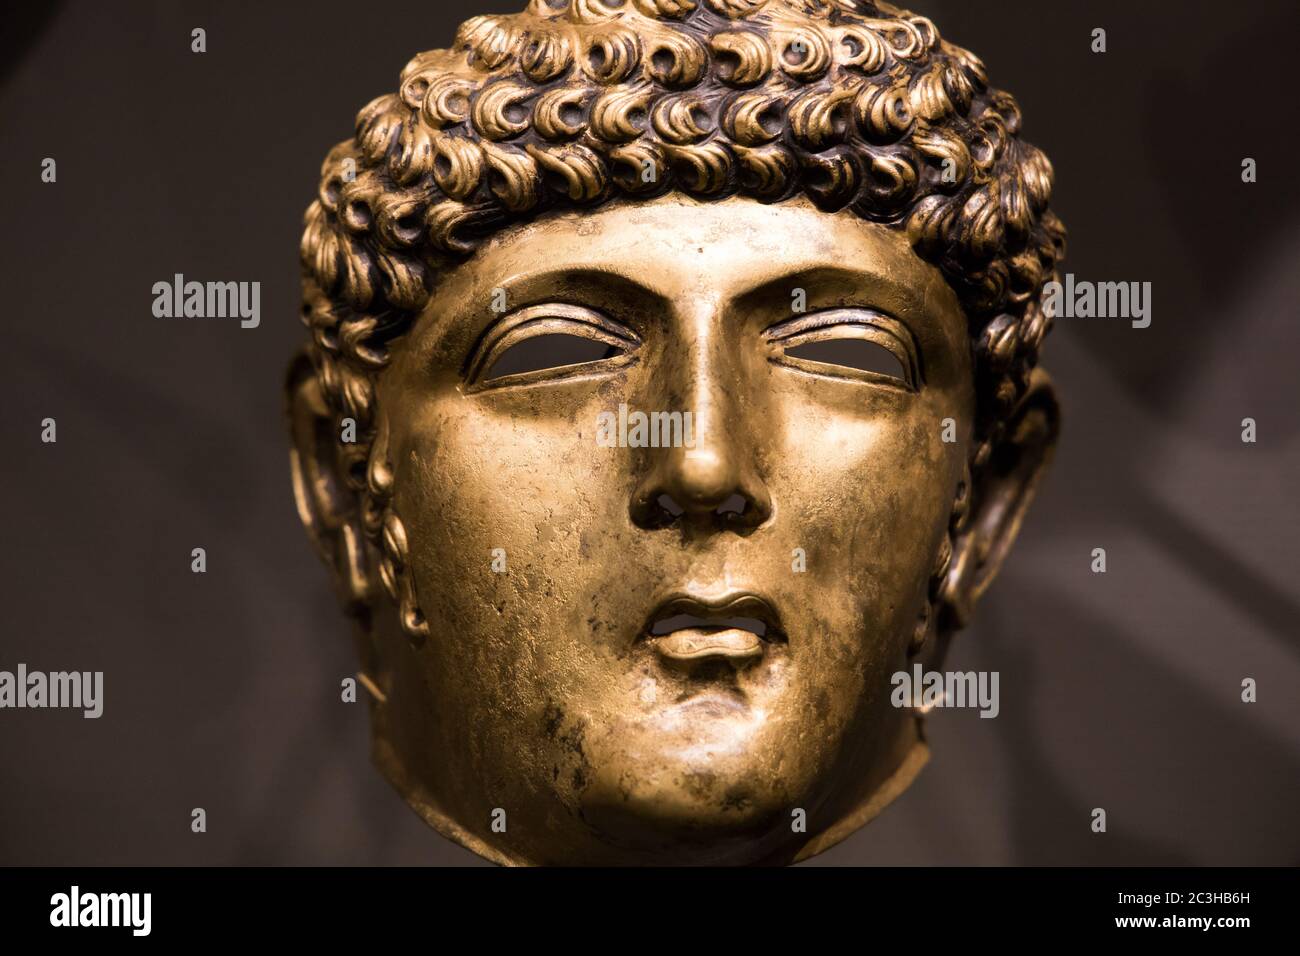 Leiden, Niederlande - 04. JAN 2020: Nahaufnahme einer bronzenen römischen Reitermaske aus der niederländischen Römerzeit (80-125 n. Chr.). Eine Gordon Maske. Stockfoto